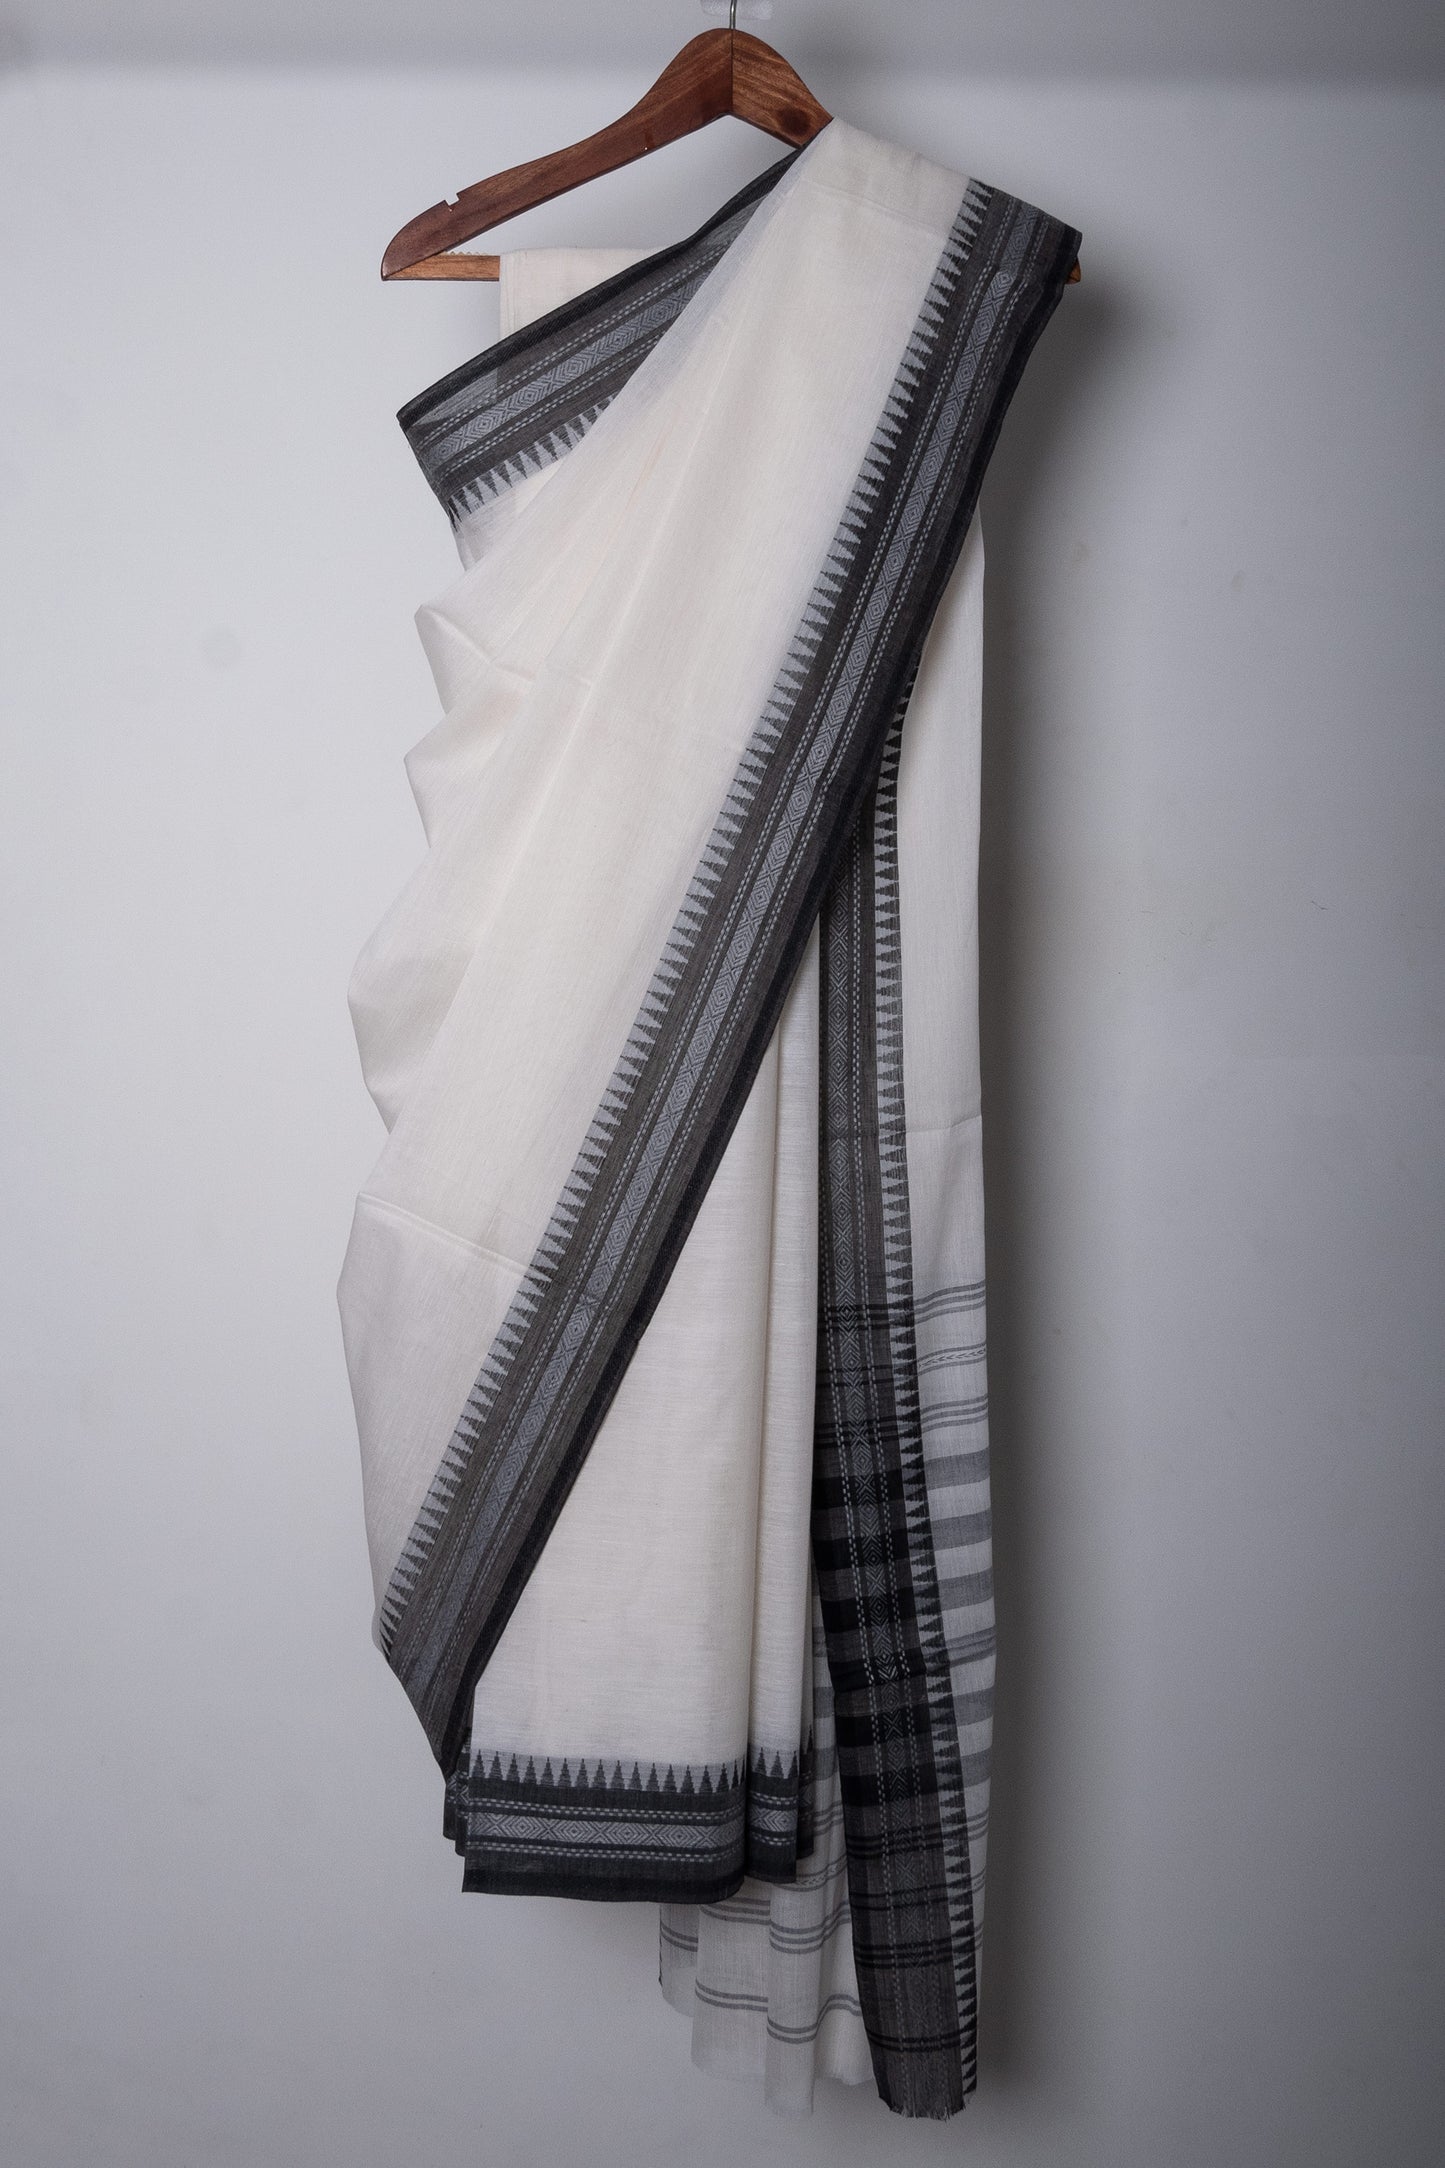 White Cotton Dhaniakhali Saree with Black Thin Woven Borders